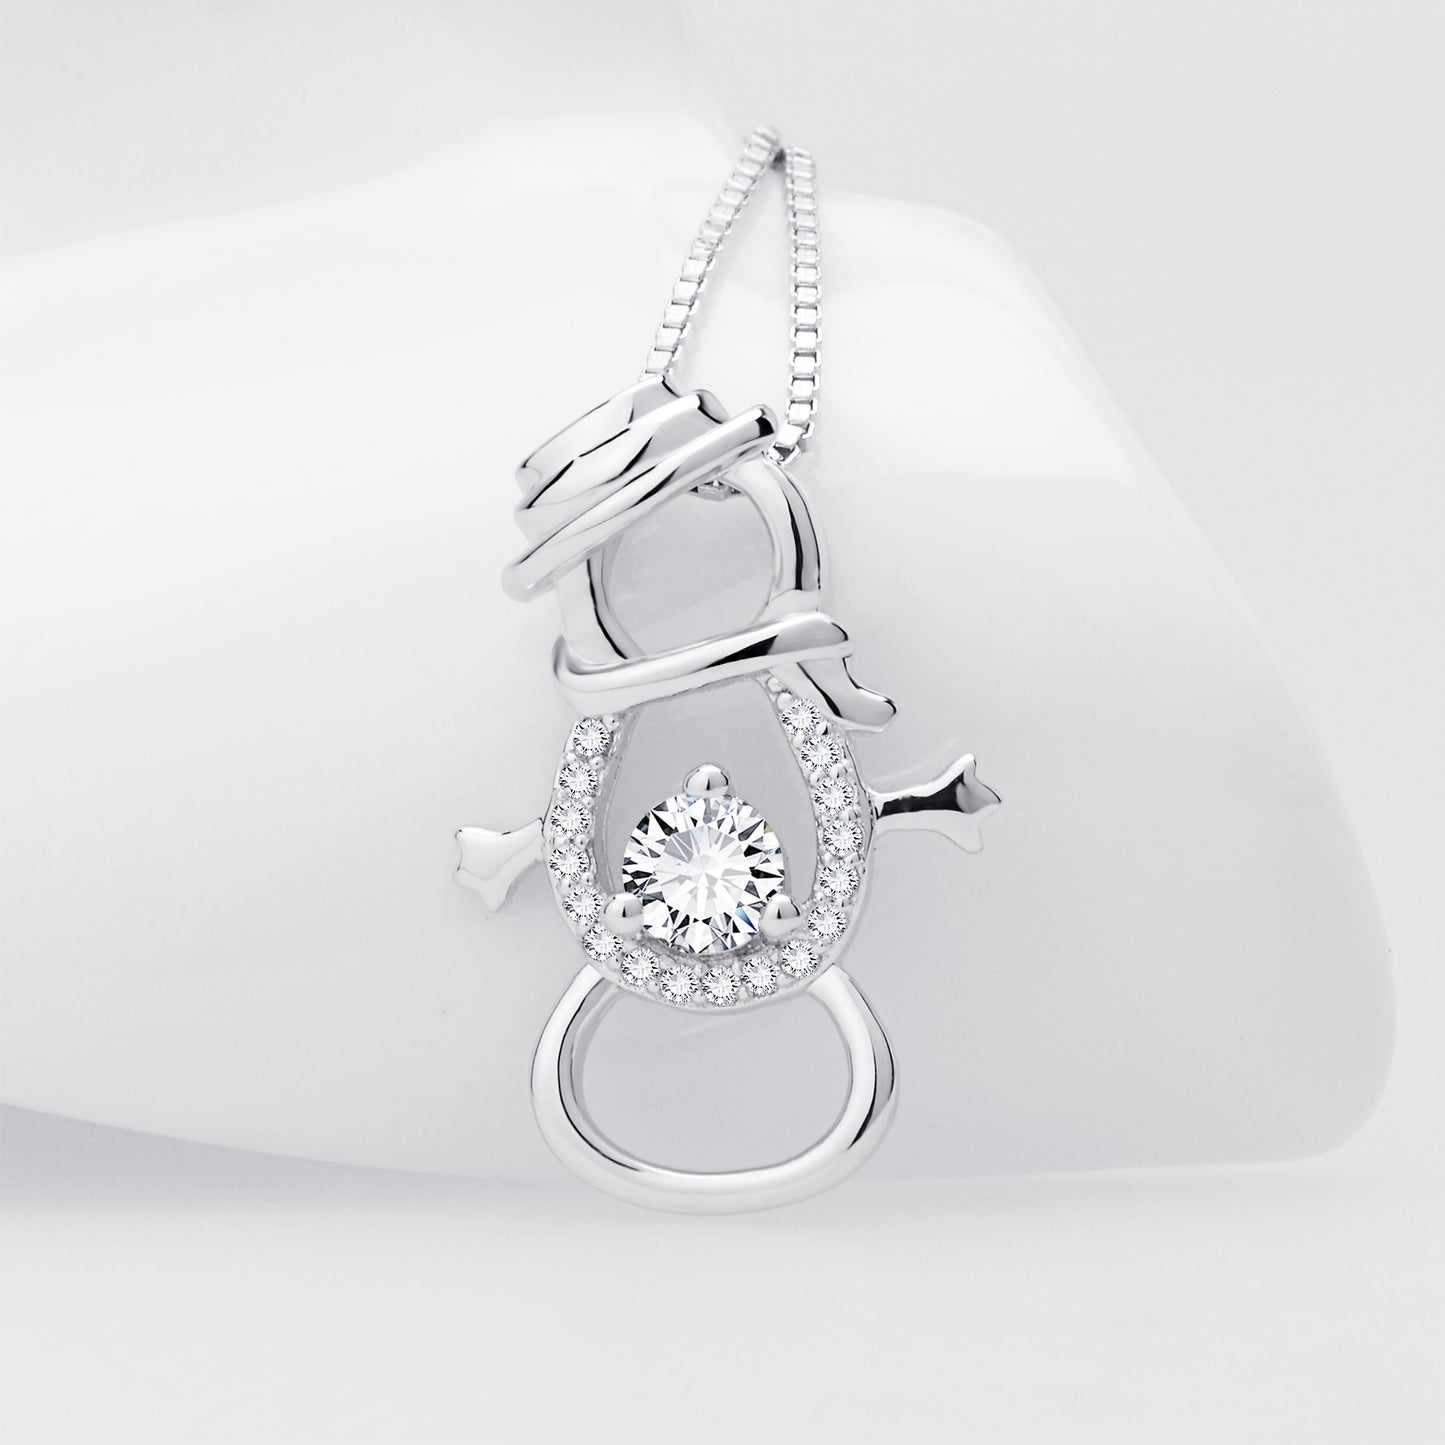 Snowman Pendant 925 Silver Necklace